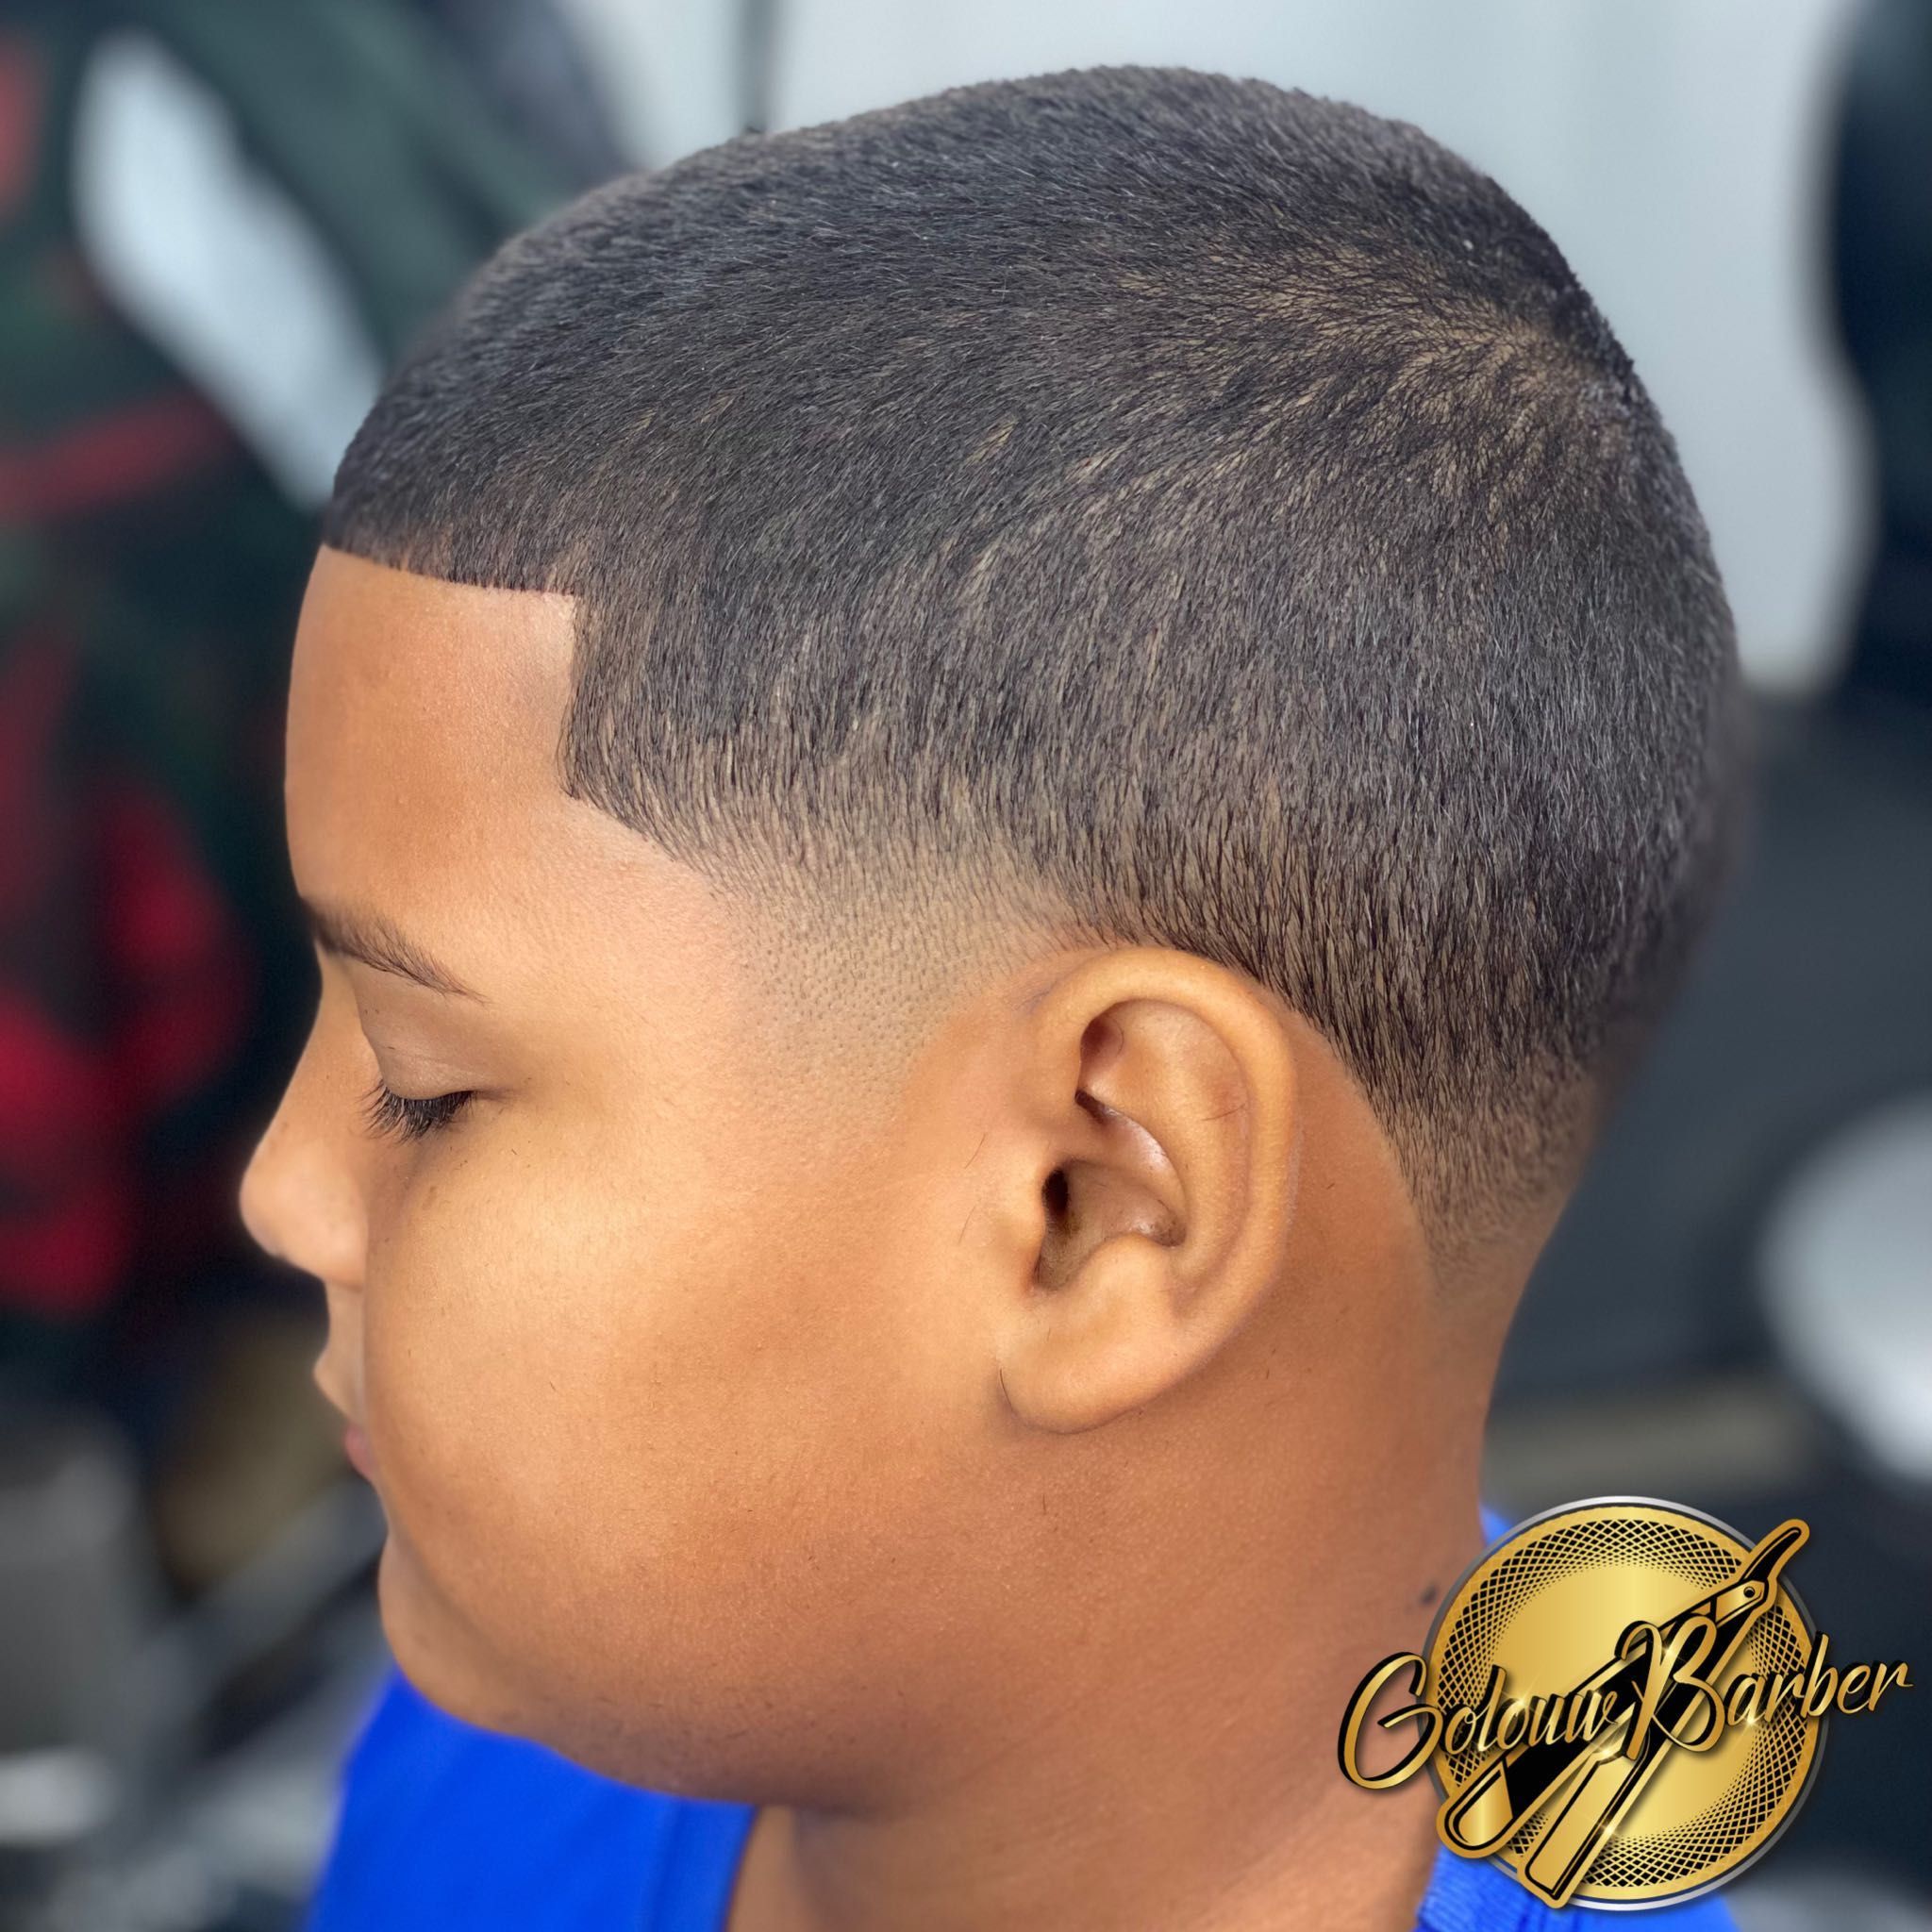 Recorte de Niño / Kids Haircut portfolio